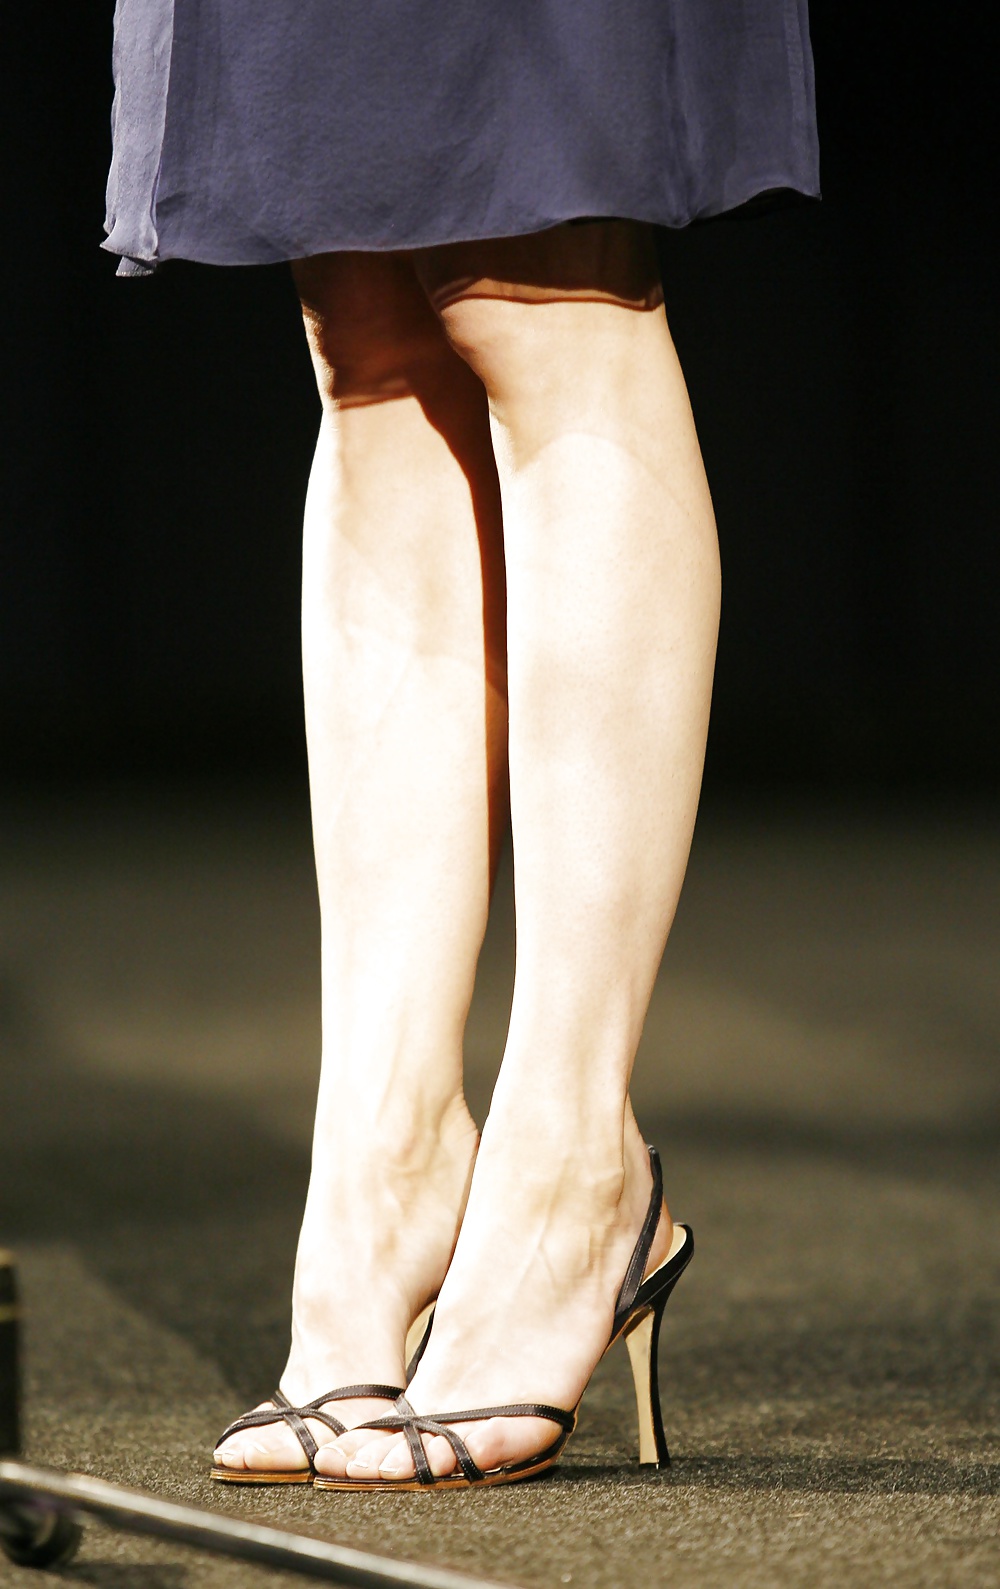 Renee Zellweger The Sculpted Legs Queen #29479950